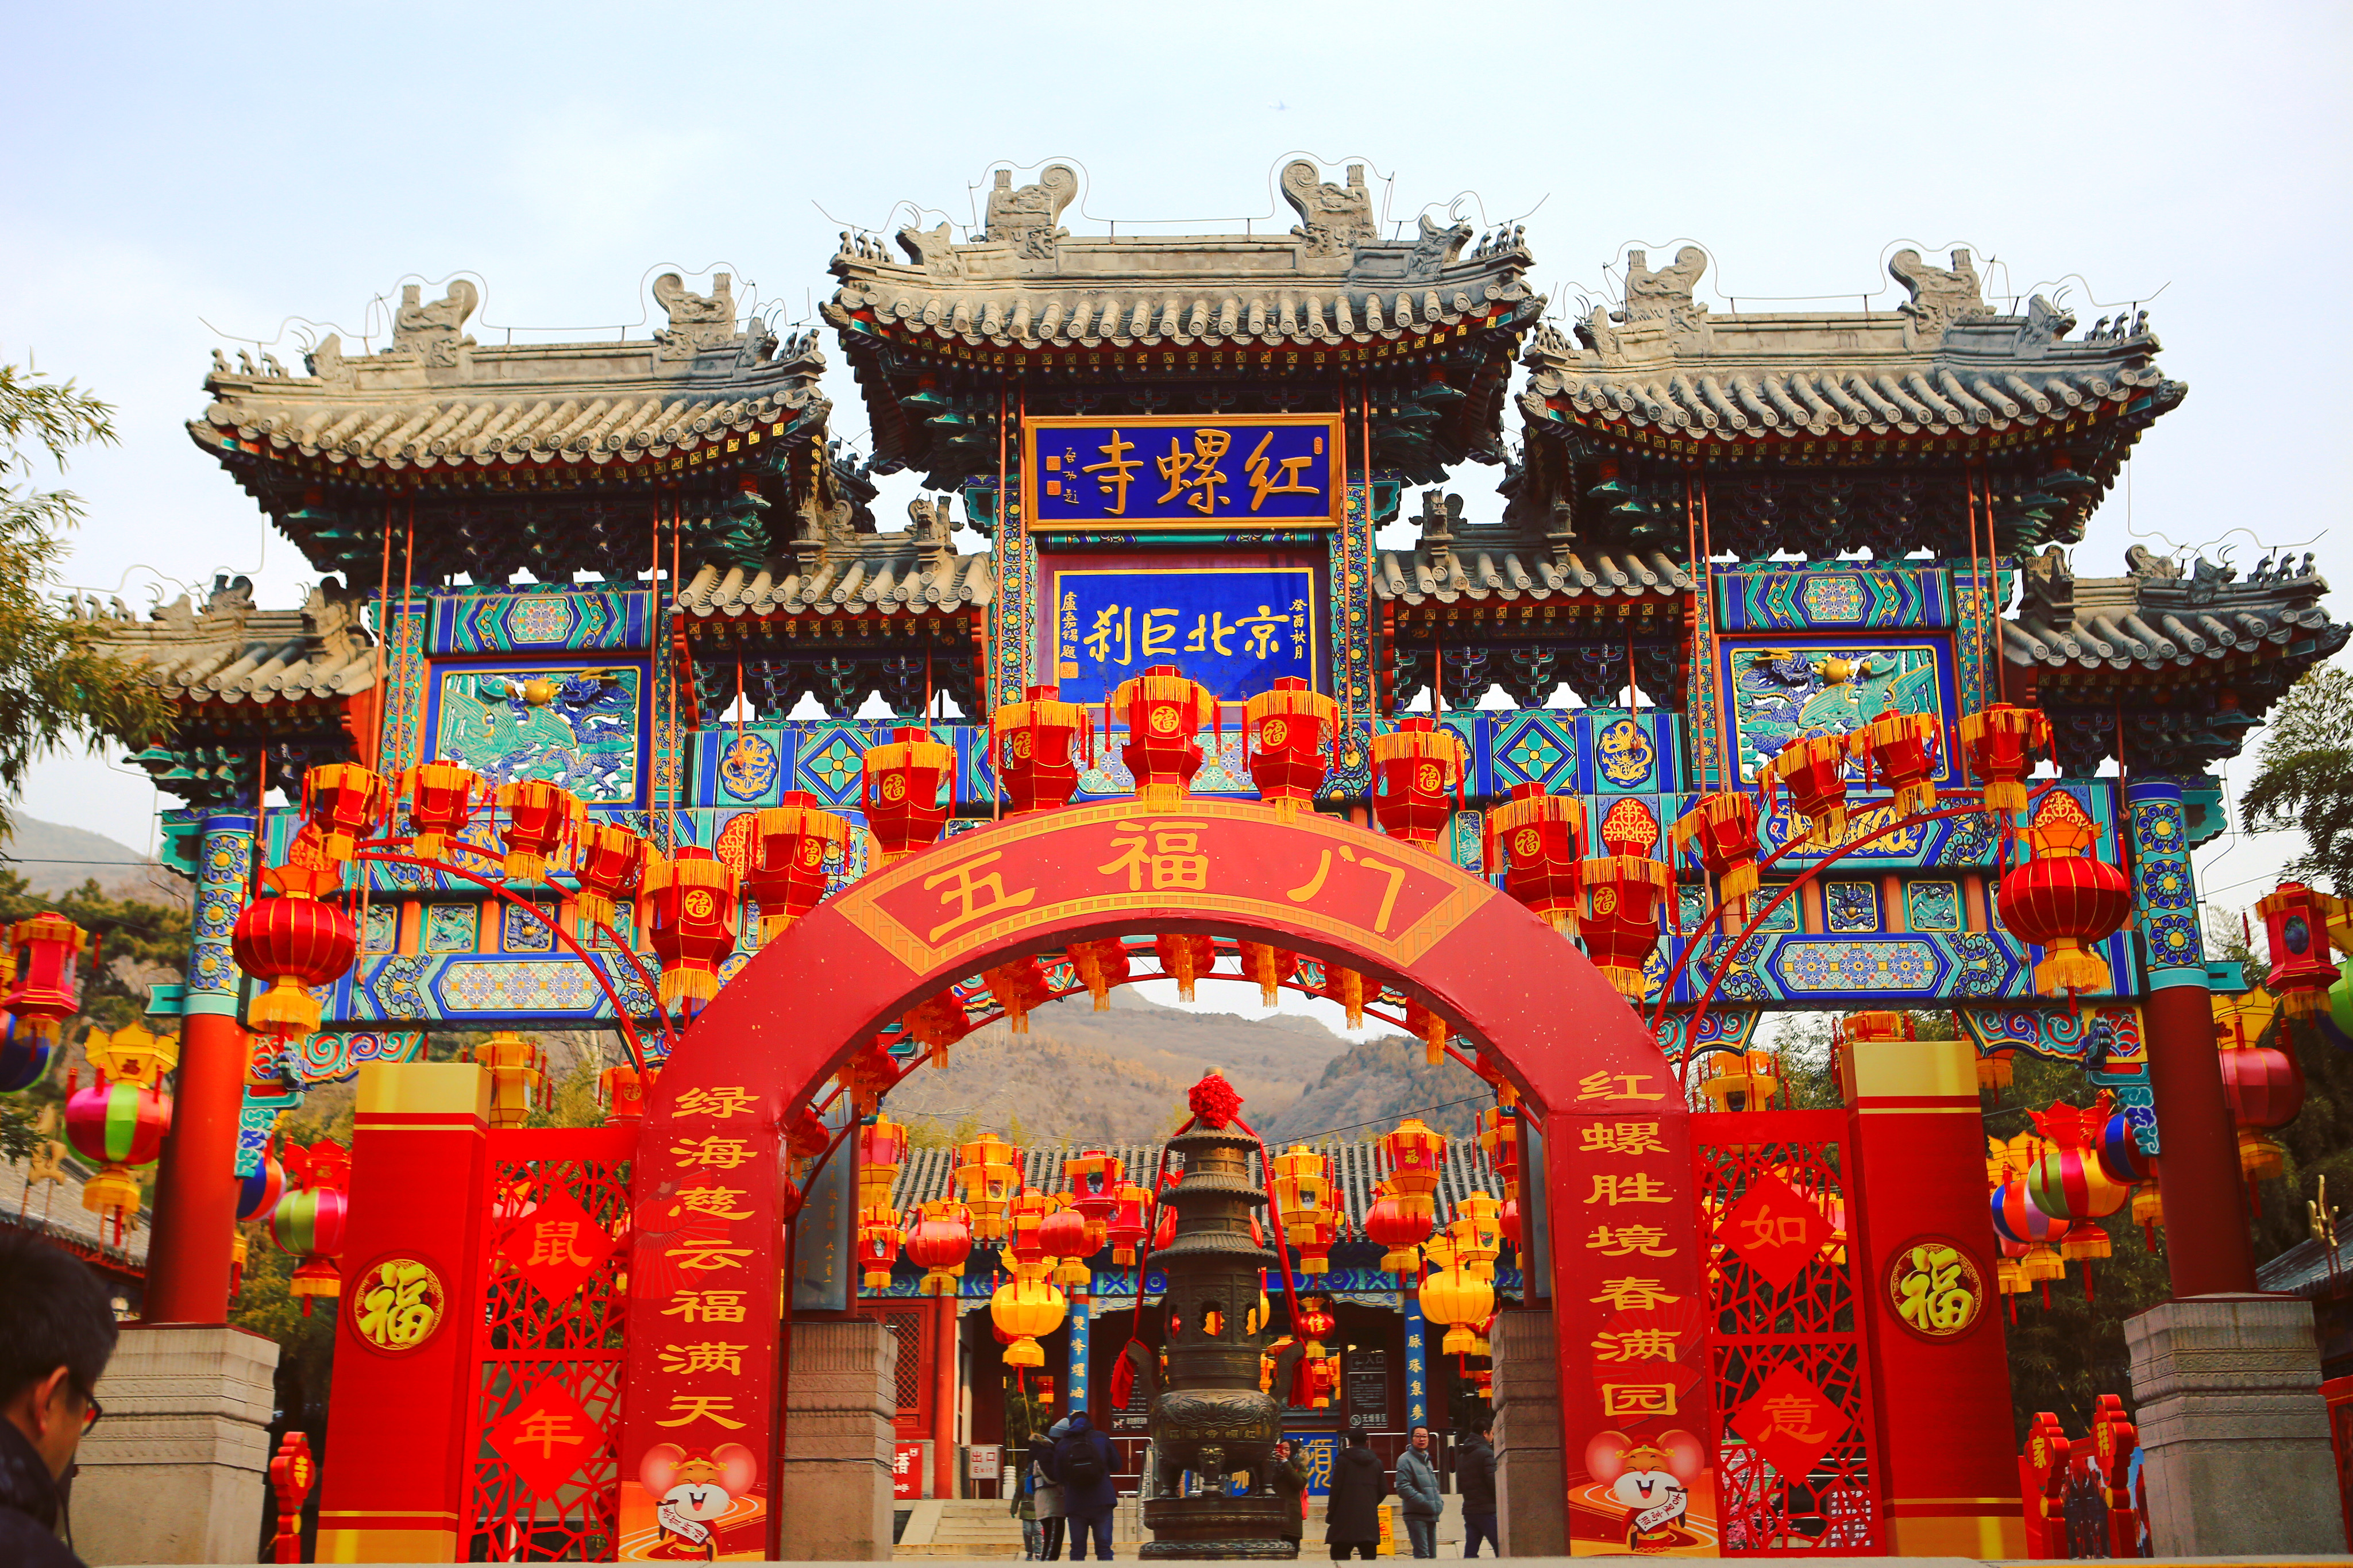 北京春节去哪玩,庙会人多,商场没钱,可能红螺寺祈福游园最适合!